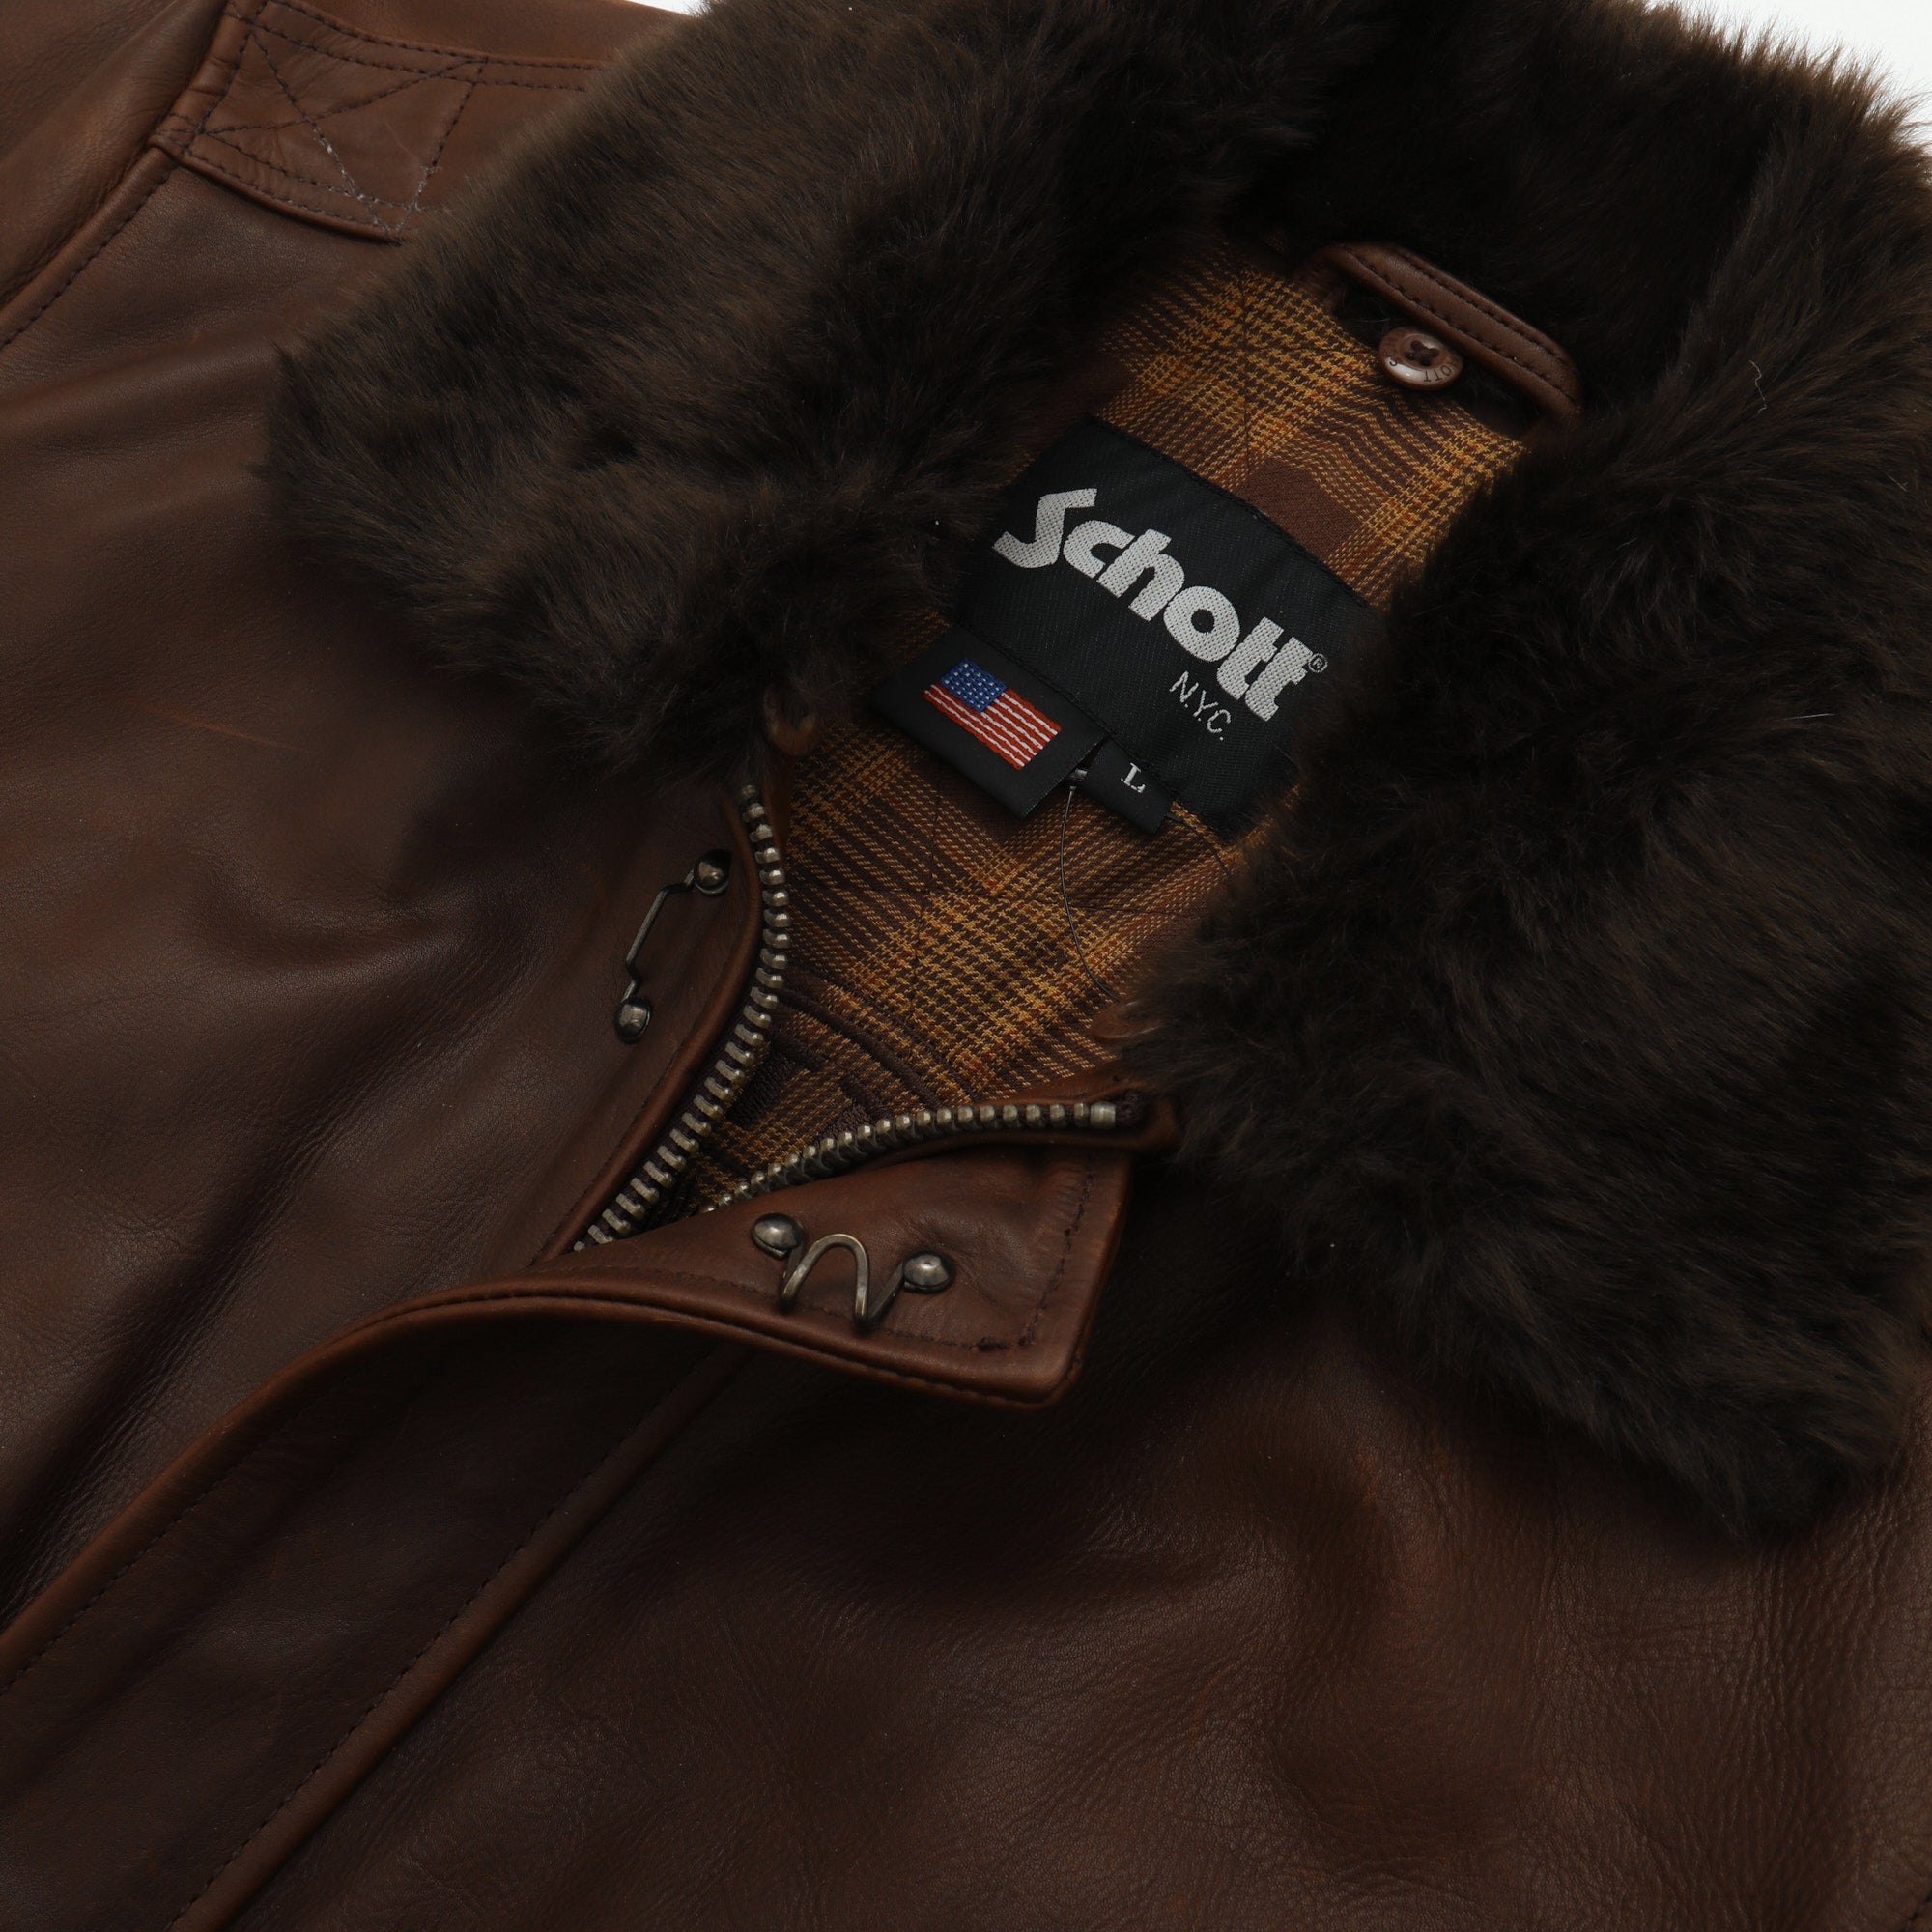 Leather Flight Jacket